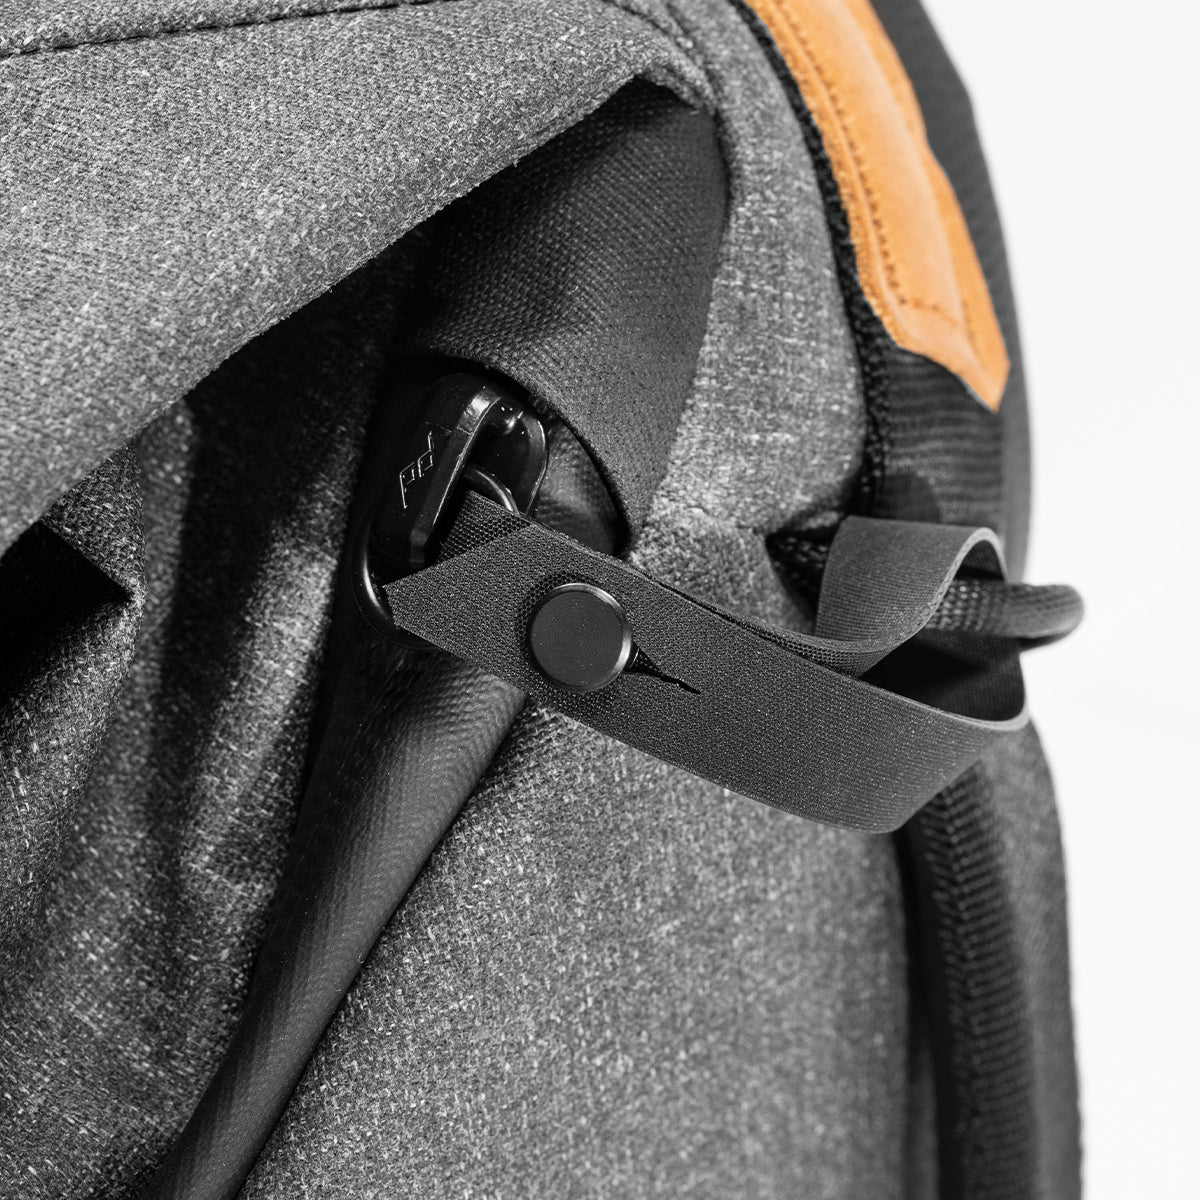 Mochila Peak Design Everyday Backpack v2 (20L Charcoal) - Us